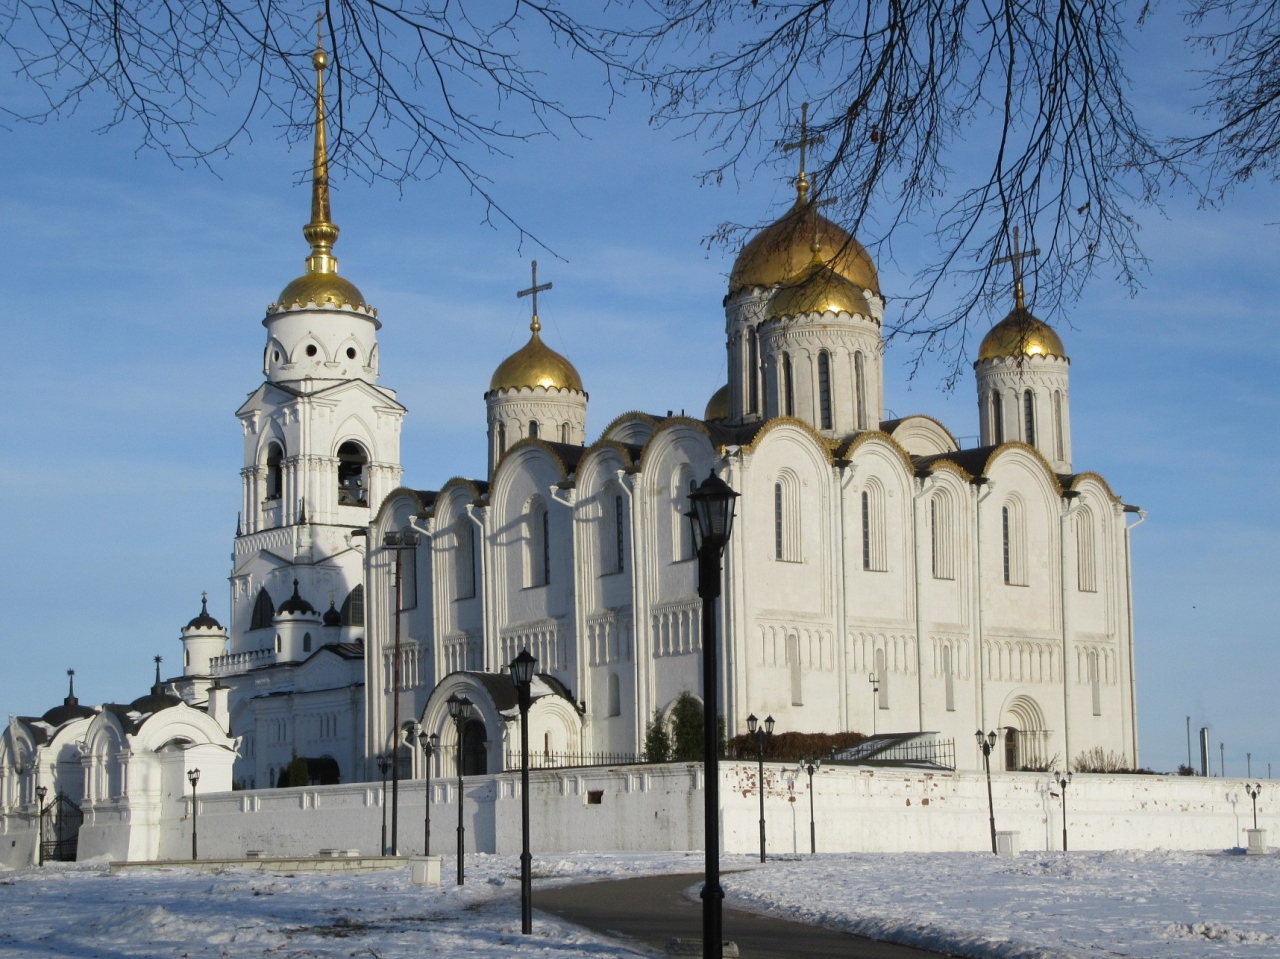 黄金の門とウスペンスキー大聖堂(ウラジーミル)